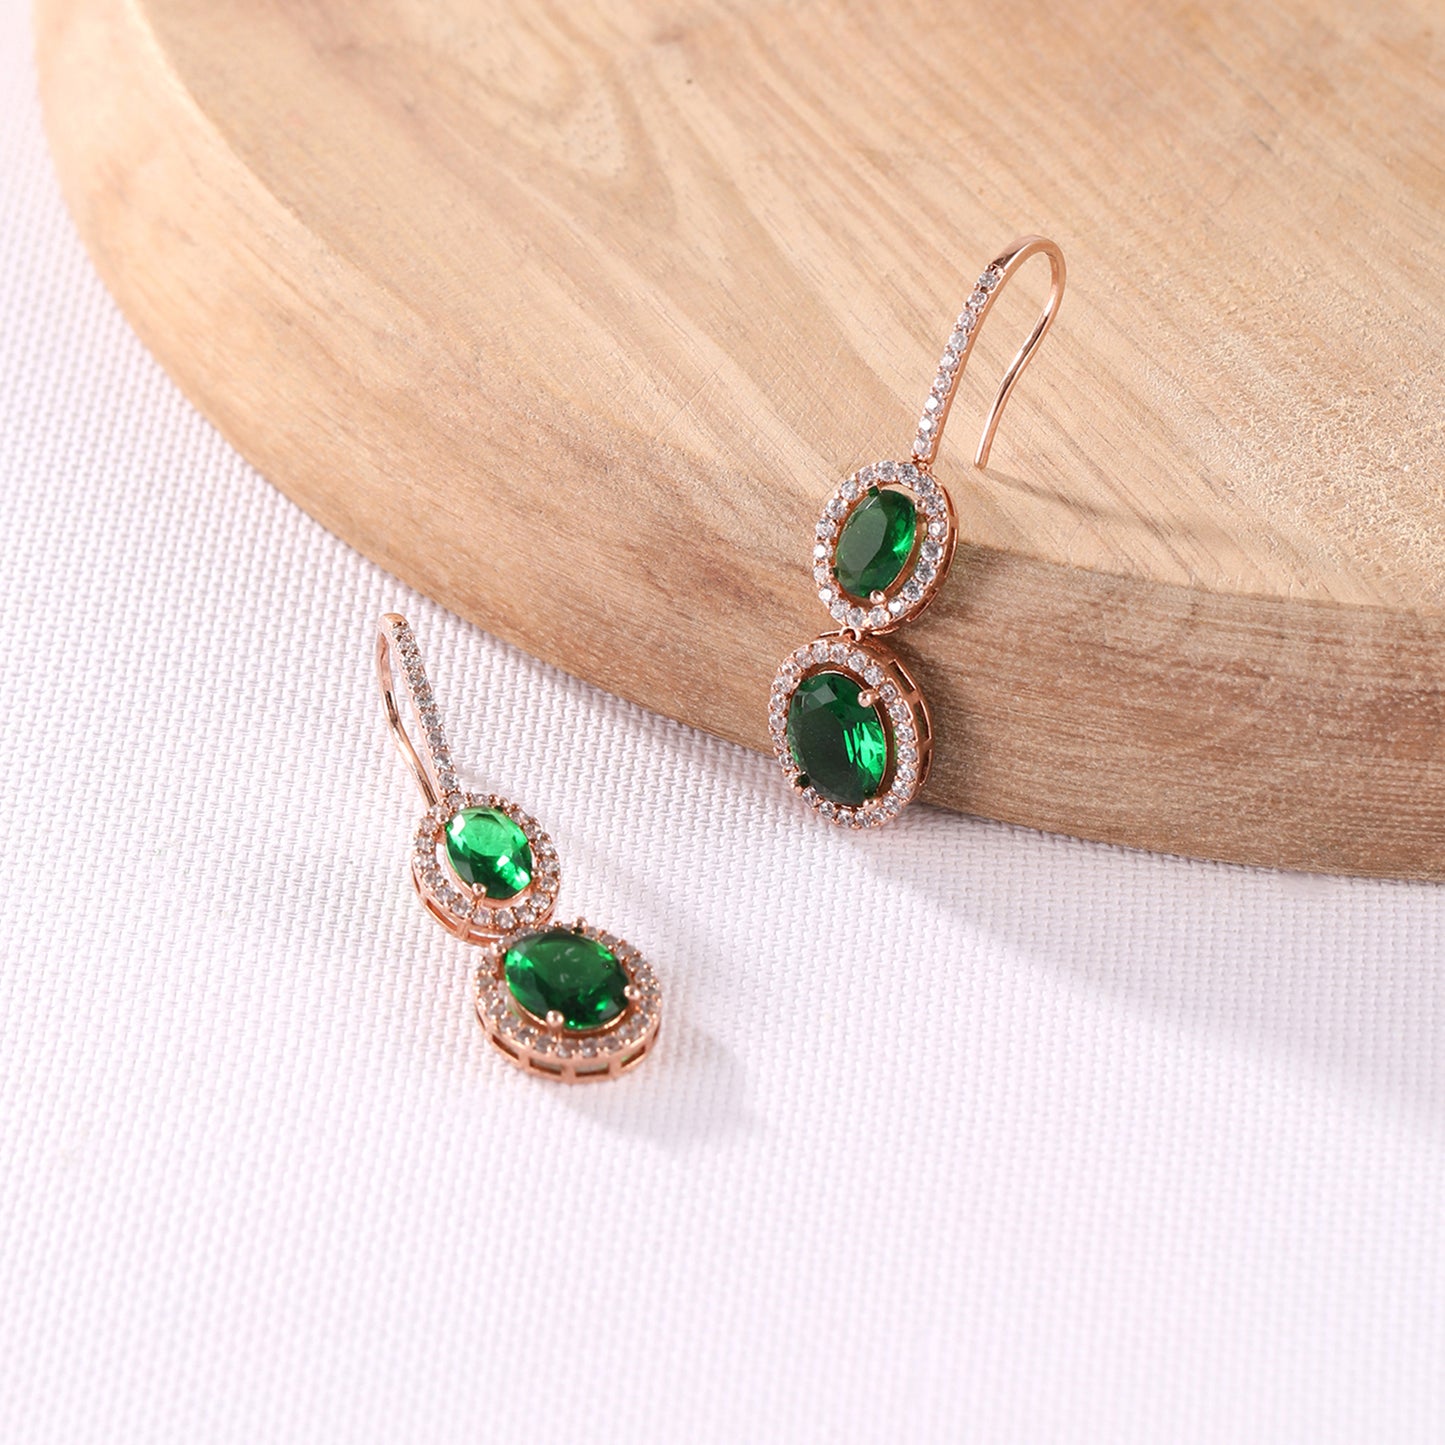 Emerald Sweetheart Earrings with Cubic Zirconia